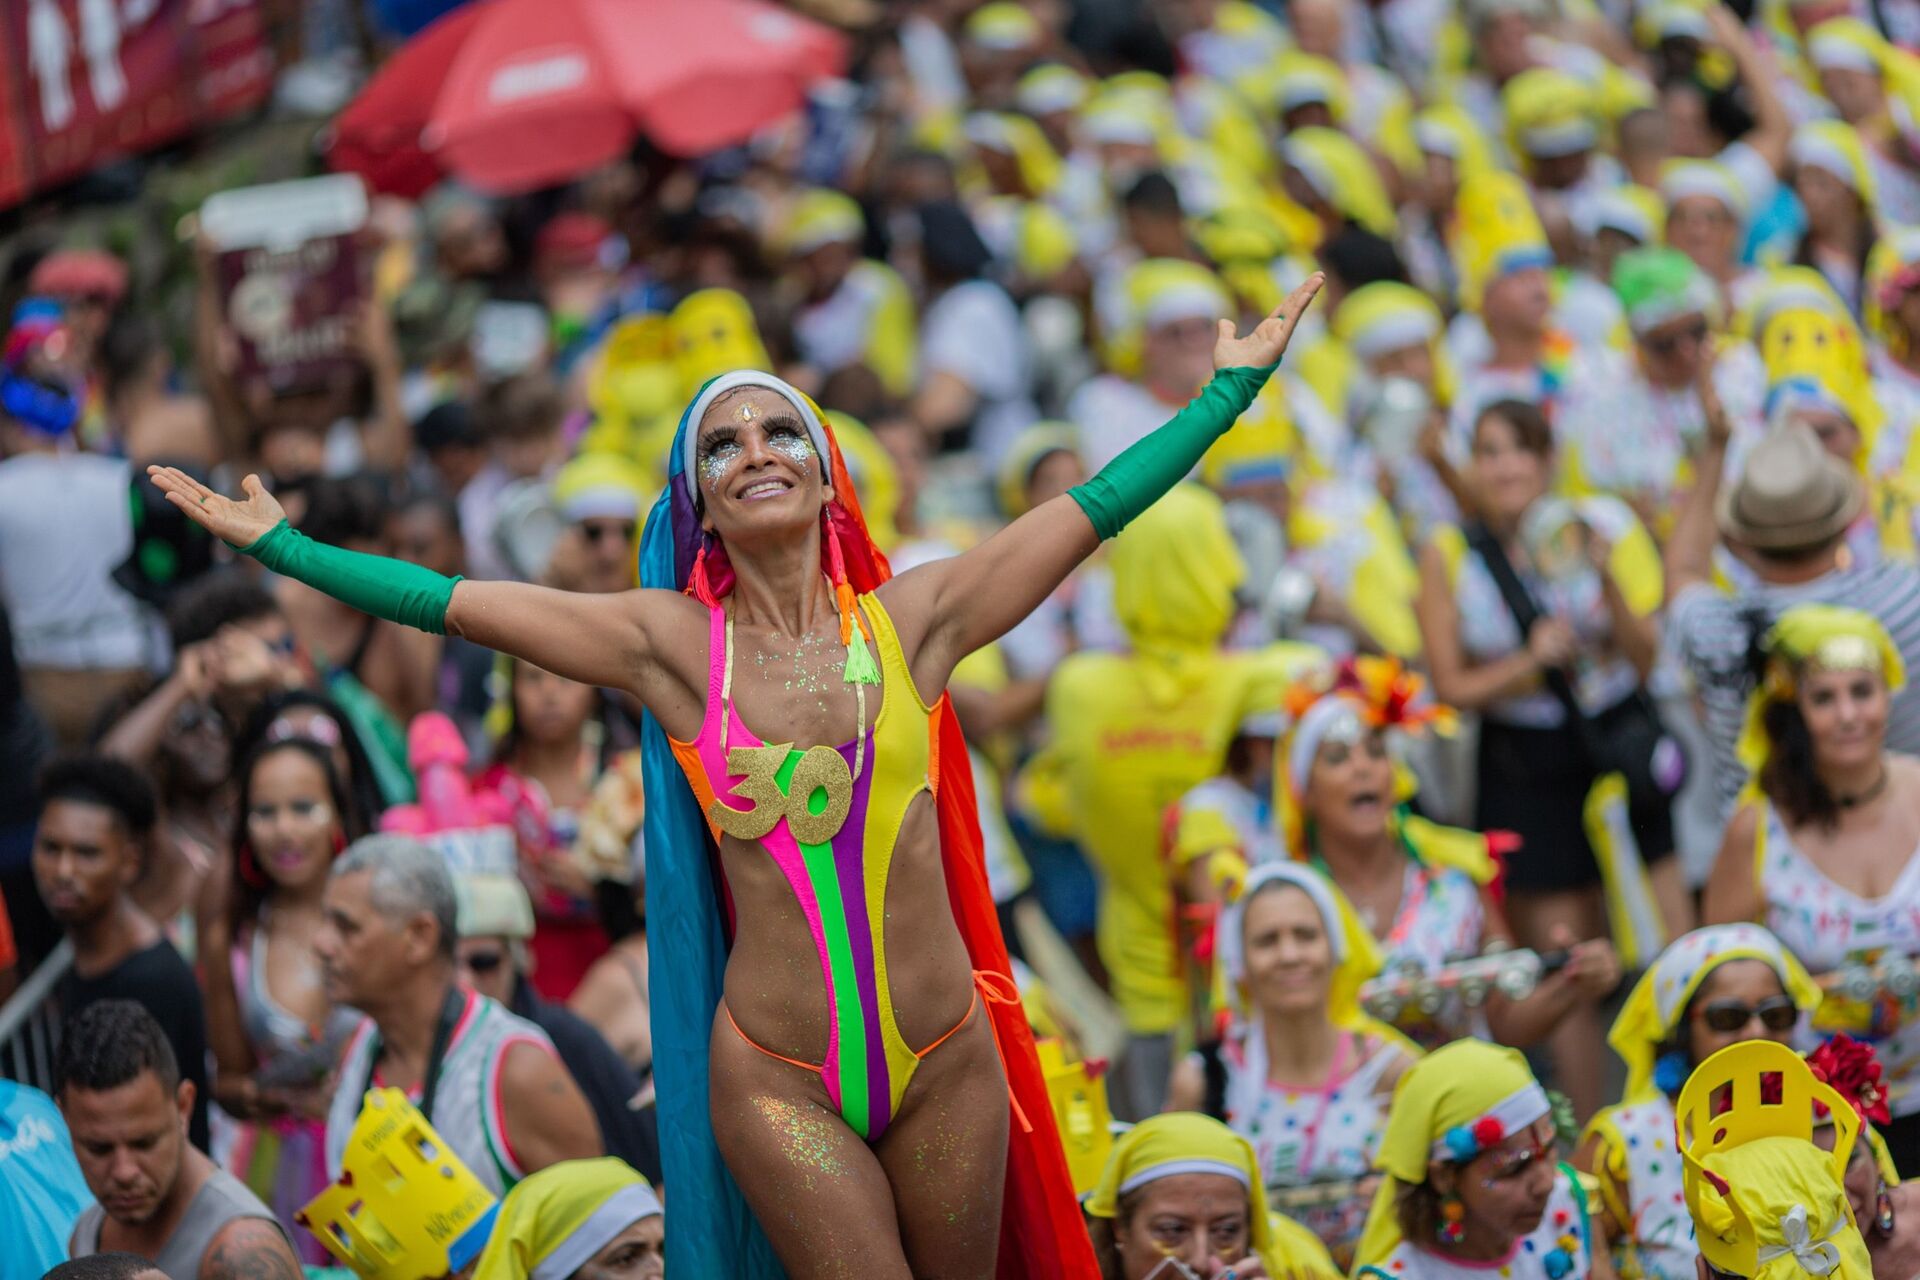 Carnaval cancelado: quais são os impactos econômicos e culturais para o Brasil? - Sputnik Brasil, 1920, 11.02.2021